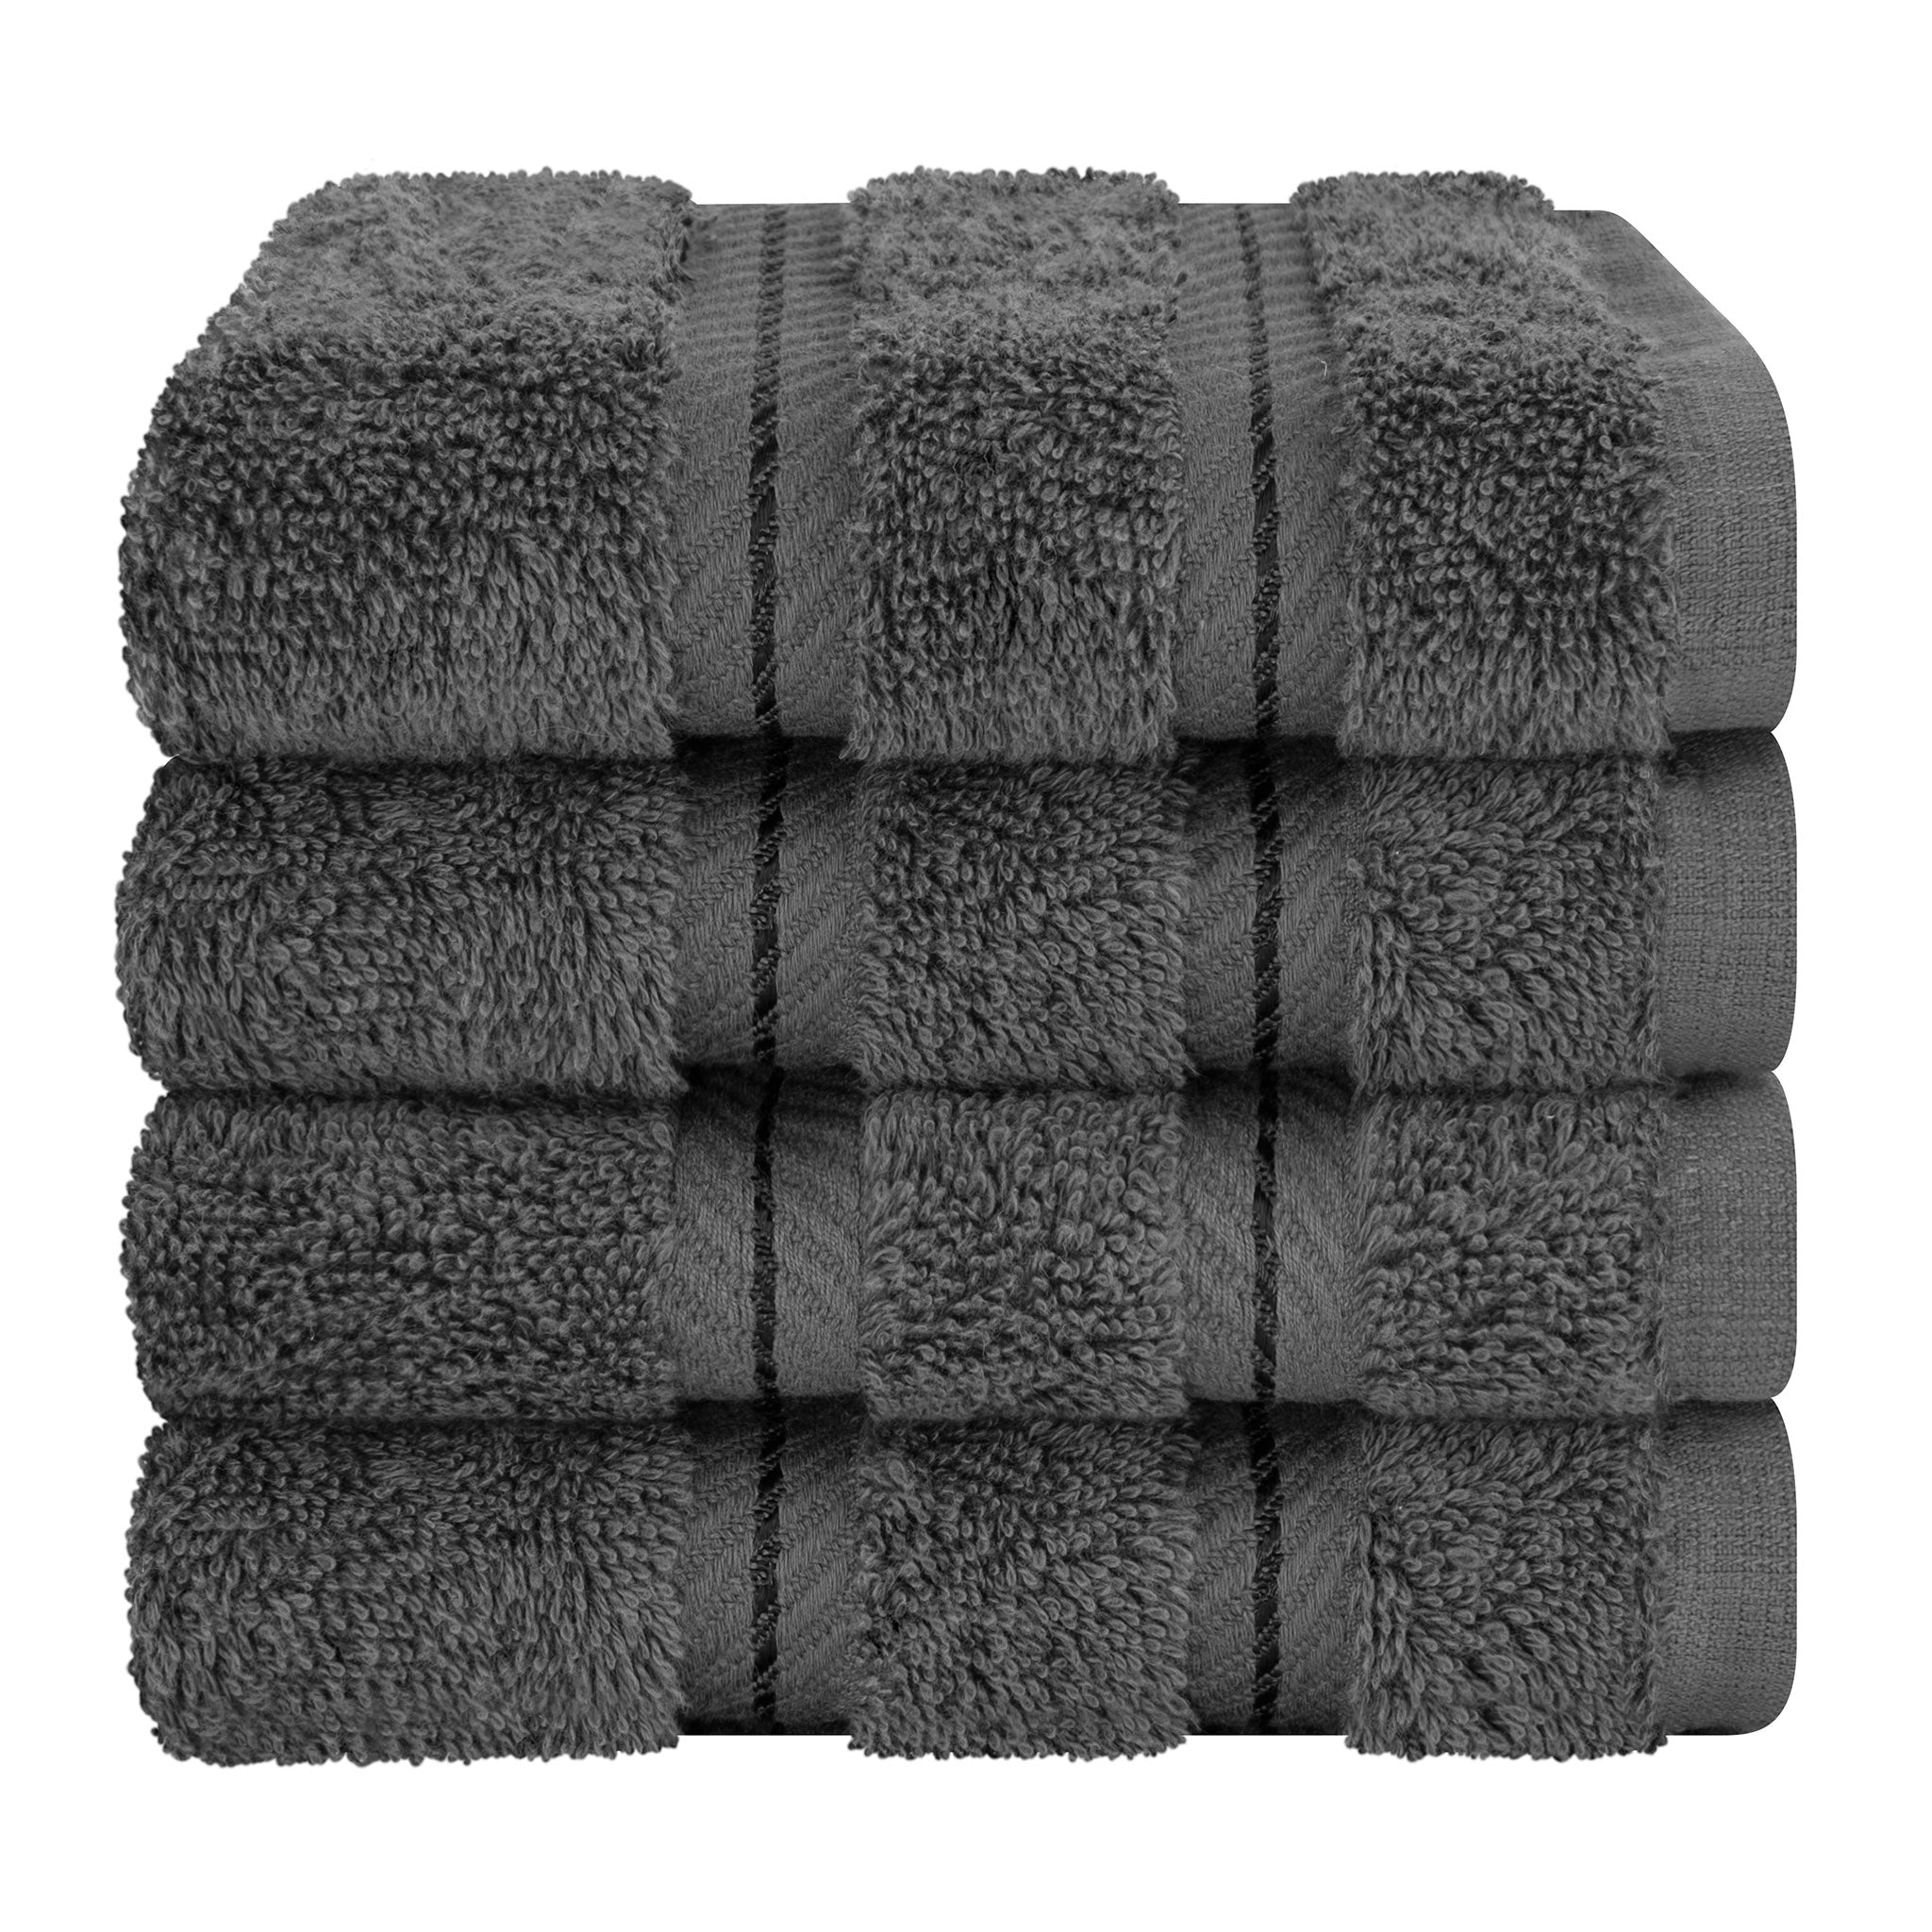 American Soft Linen Luxury 4 Piece Bath Towel Set, 100% Cotton